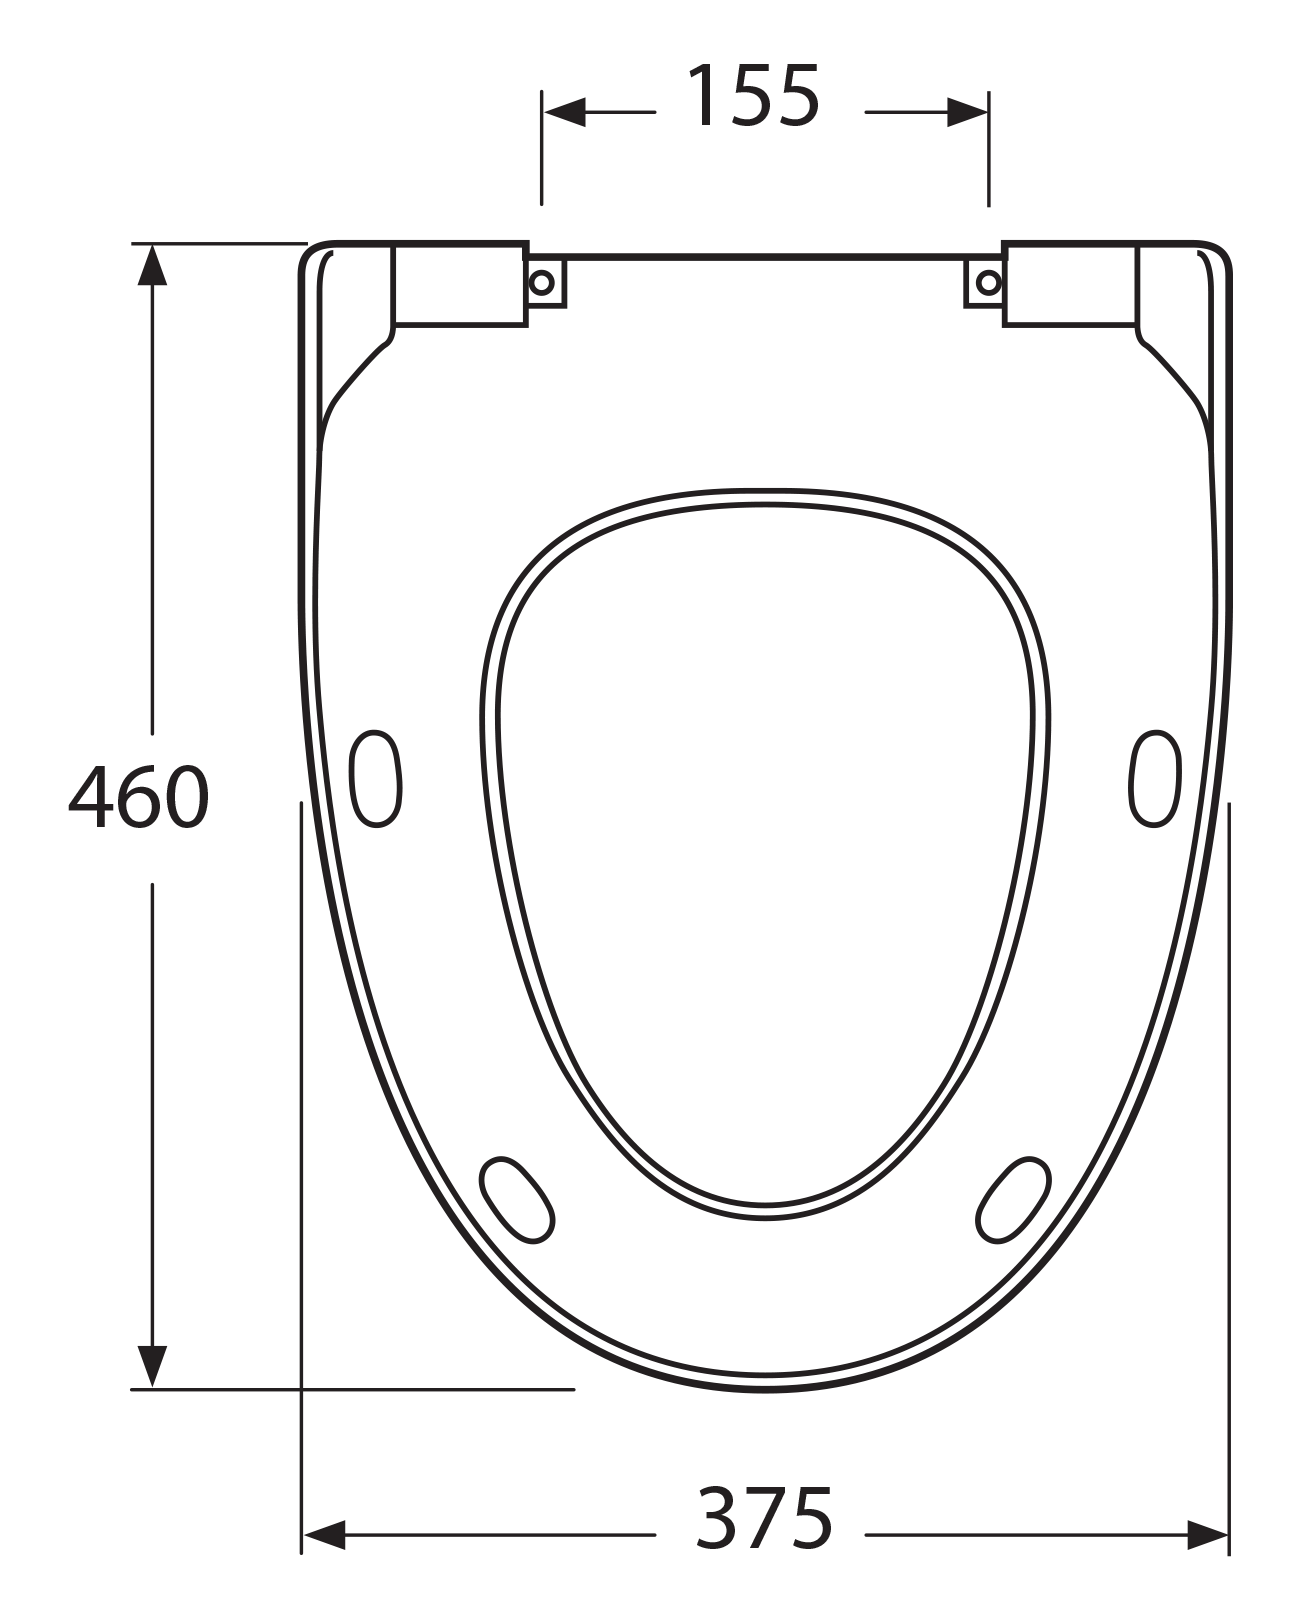 Подобрать сиденье по размерам. Gustavsberg EVALET сиденье. Сиденье SANTRADE для унитаза размер. Сидушка для унитаза Gustavsberg. Стульчак для унитаза Размеры.